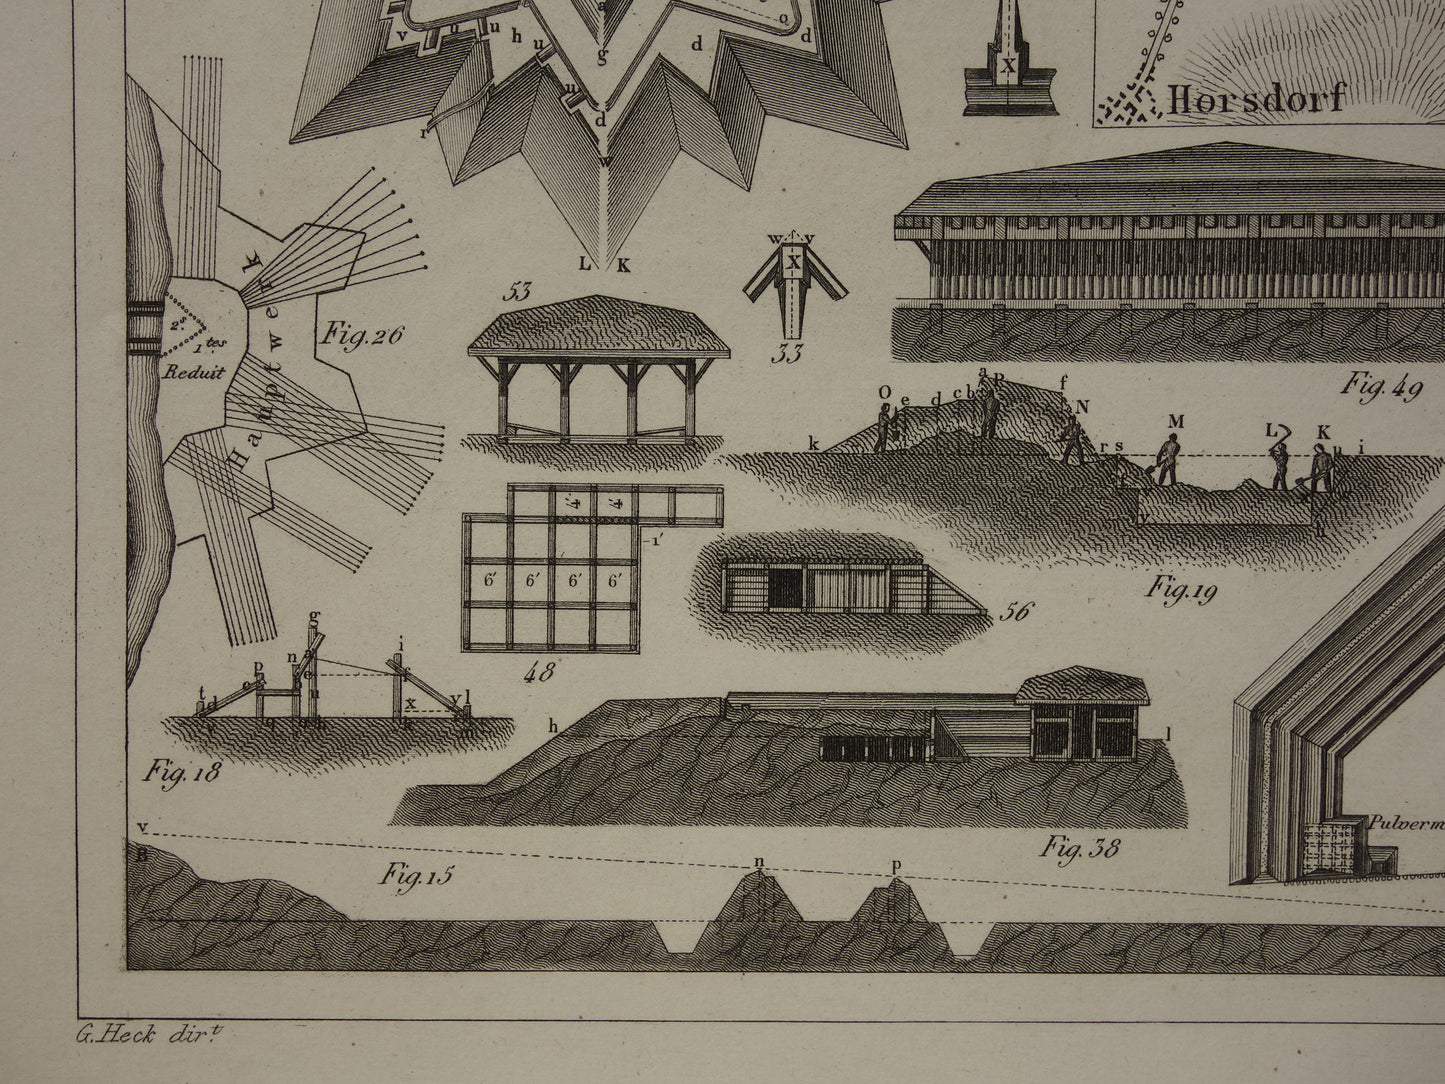 Oude prent over fortificaties - originele antieke militaire illustratie - vestingwerken forten fort architectuur print